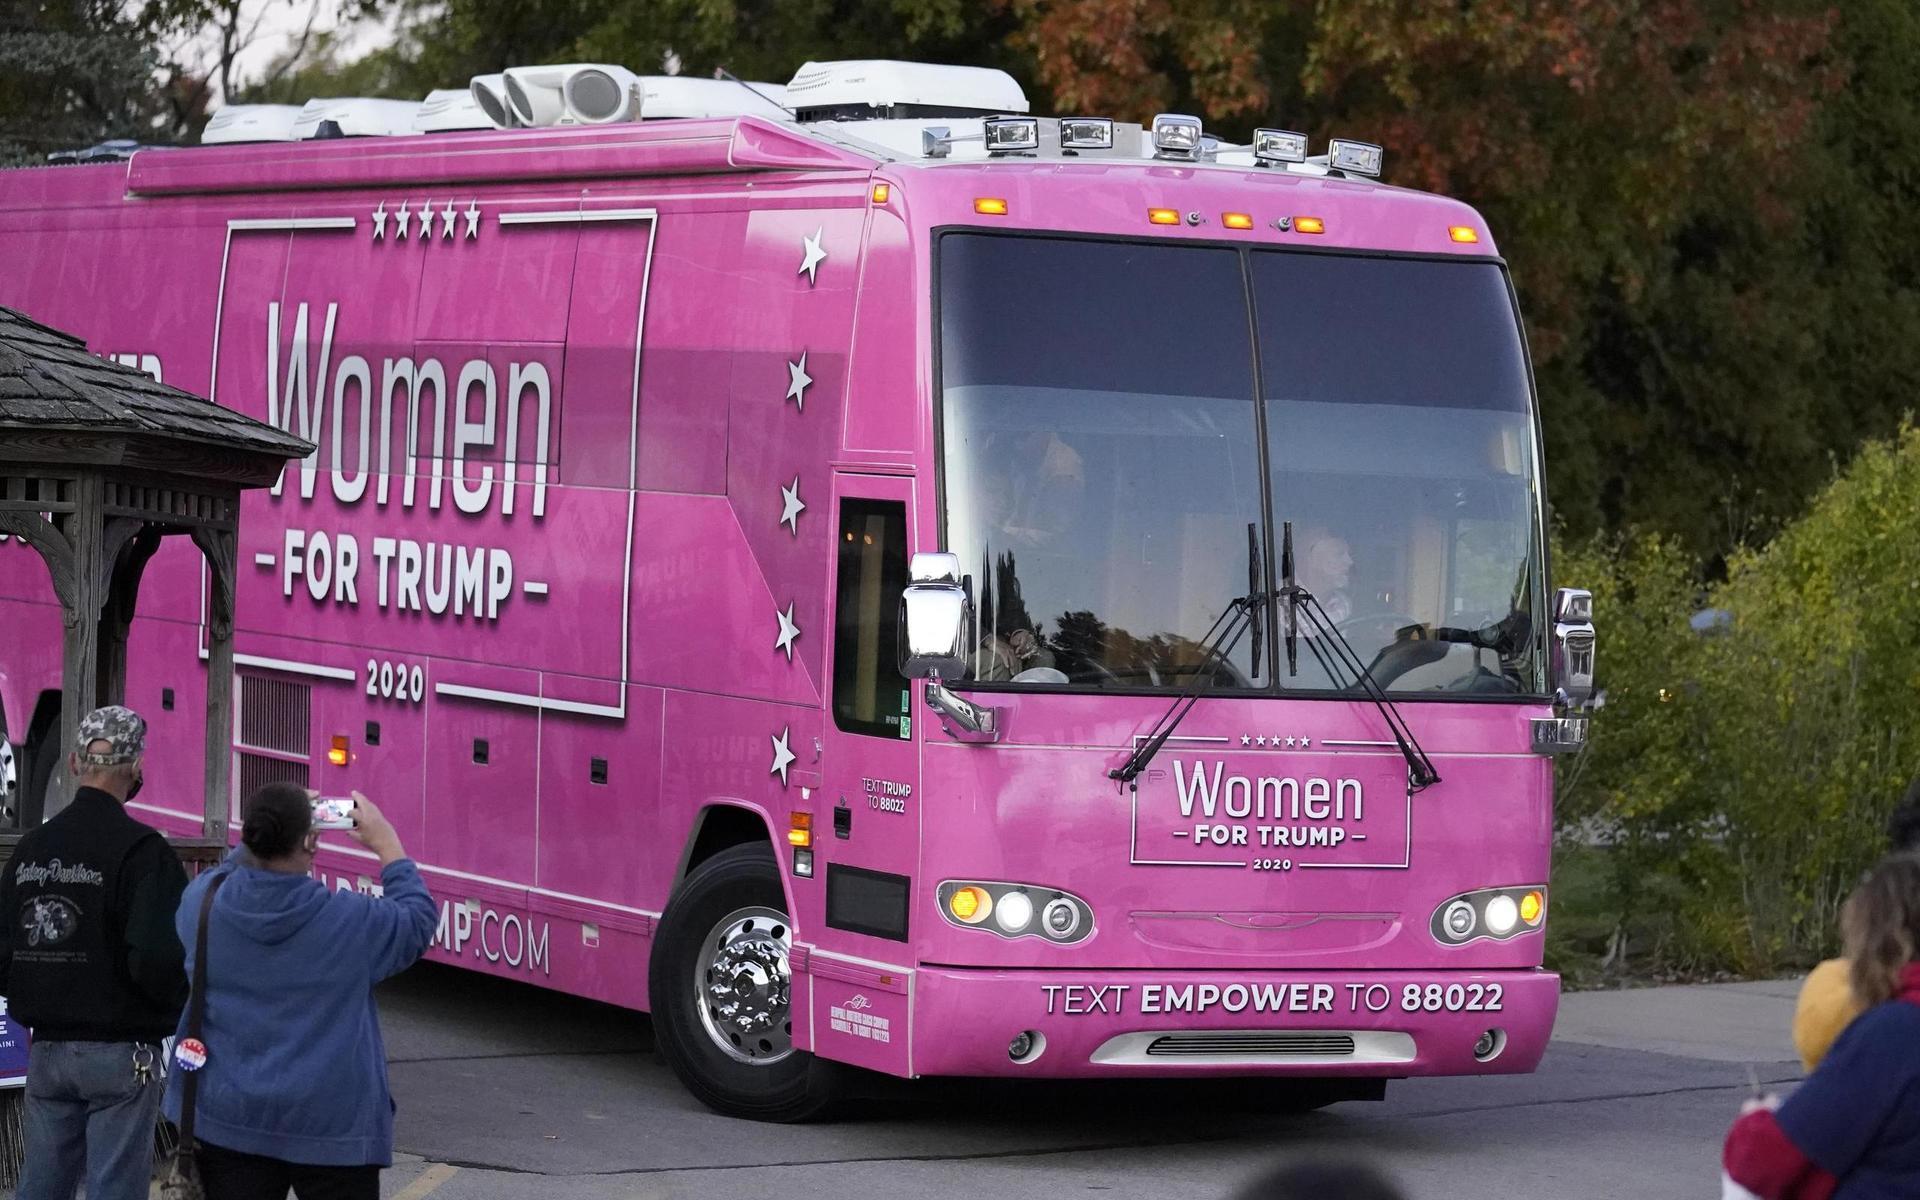 I sin rosa buss reser Women for Trump runt om och kampanjar.